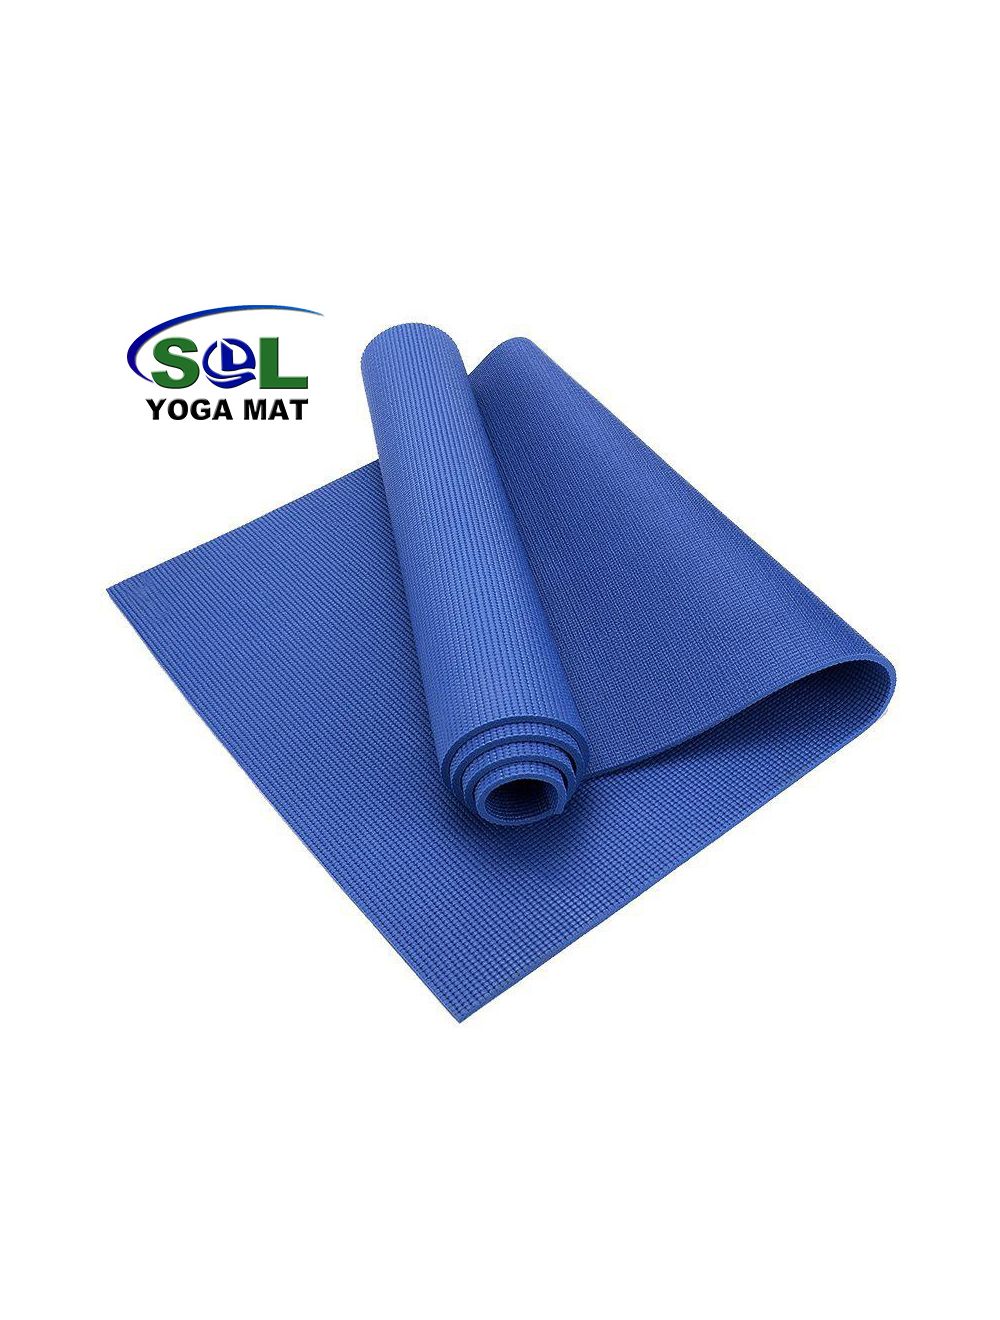 4mm Non- slip beginner suitable PVC Yoga mat